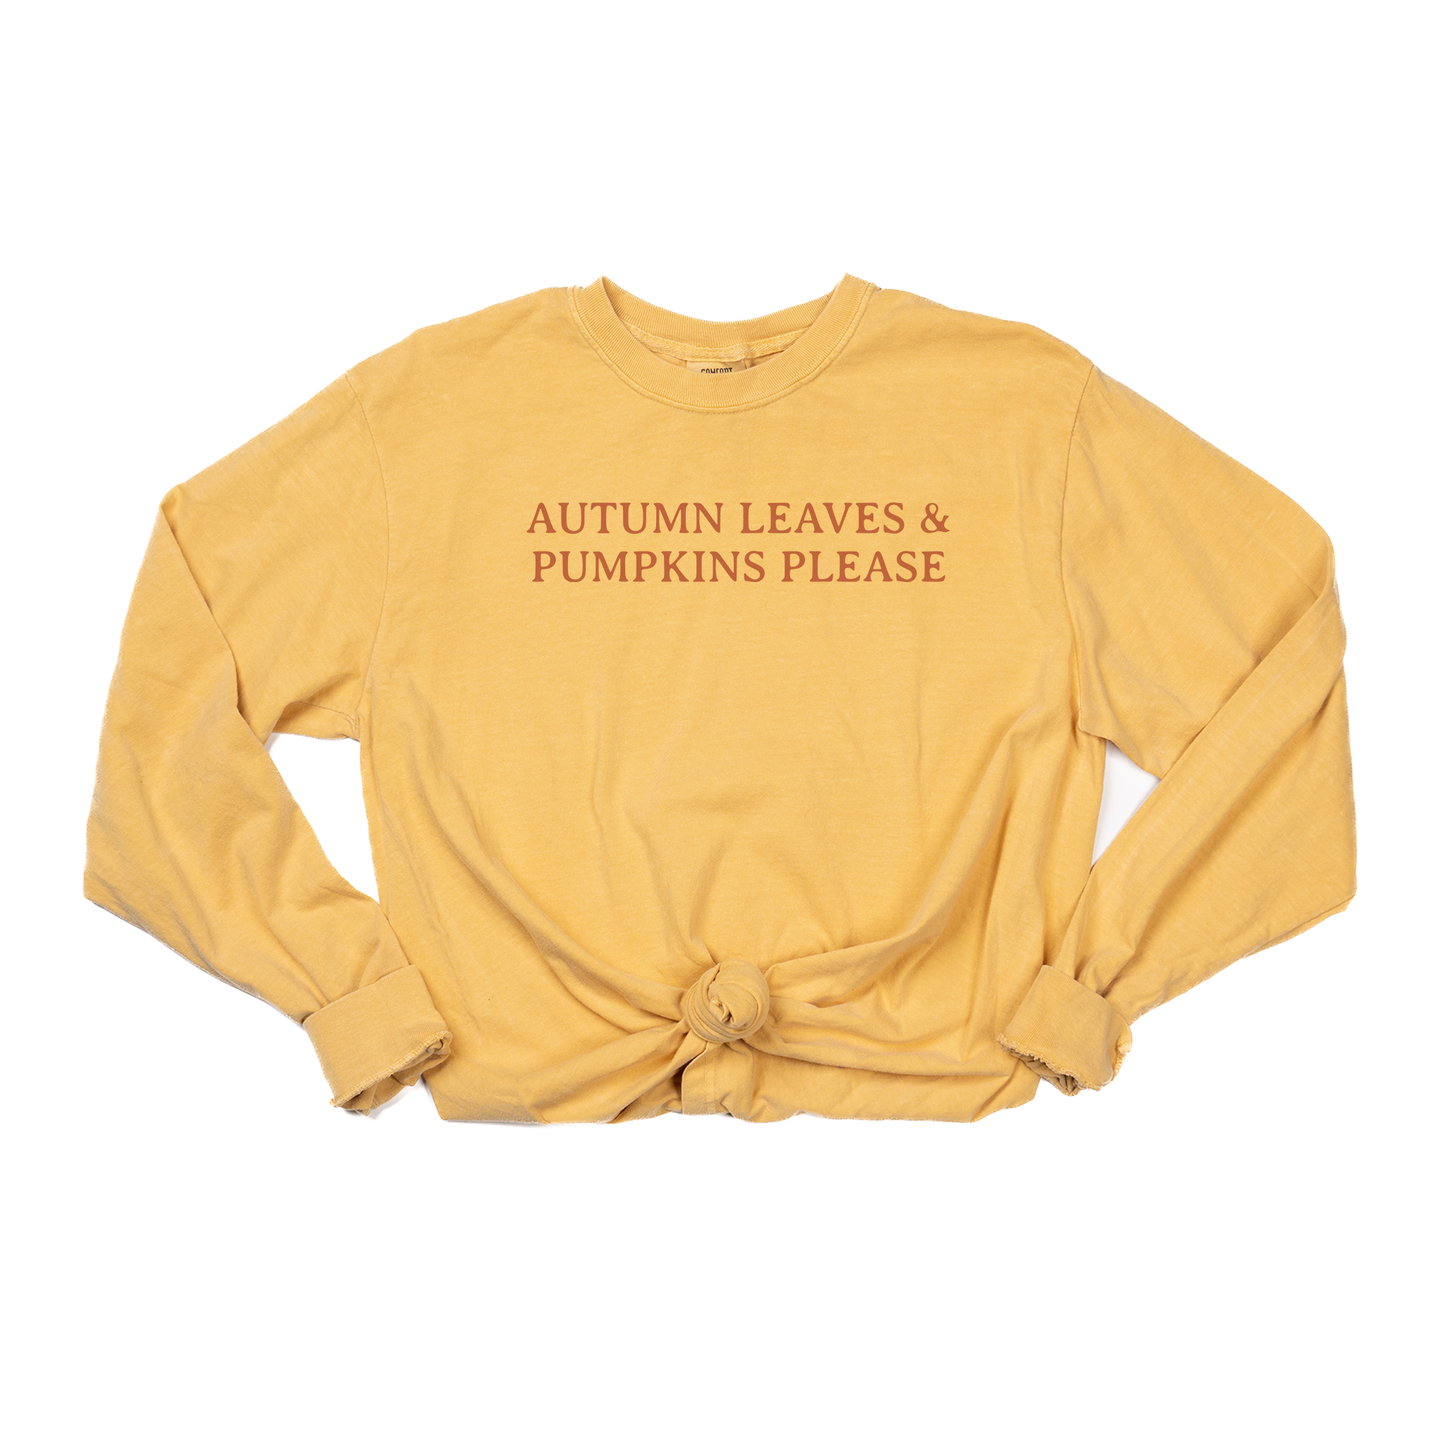 Autumn Leaves & Pumpkins Please (Rust) - Tee (Vintage Mustard, Long Sleeve)